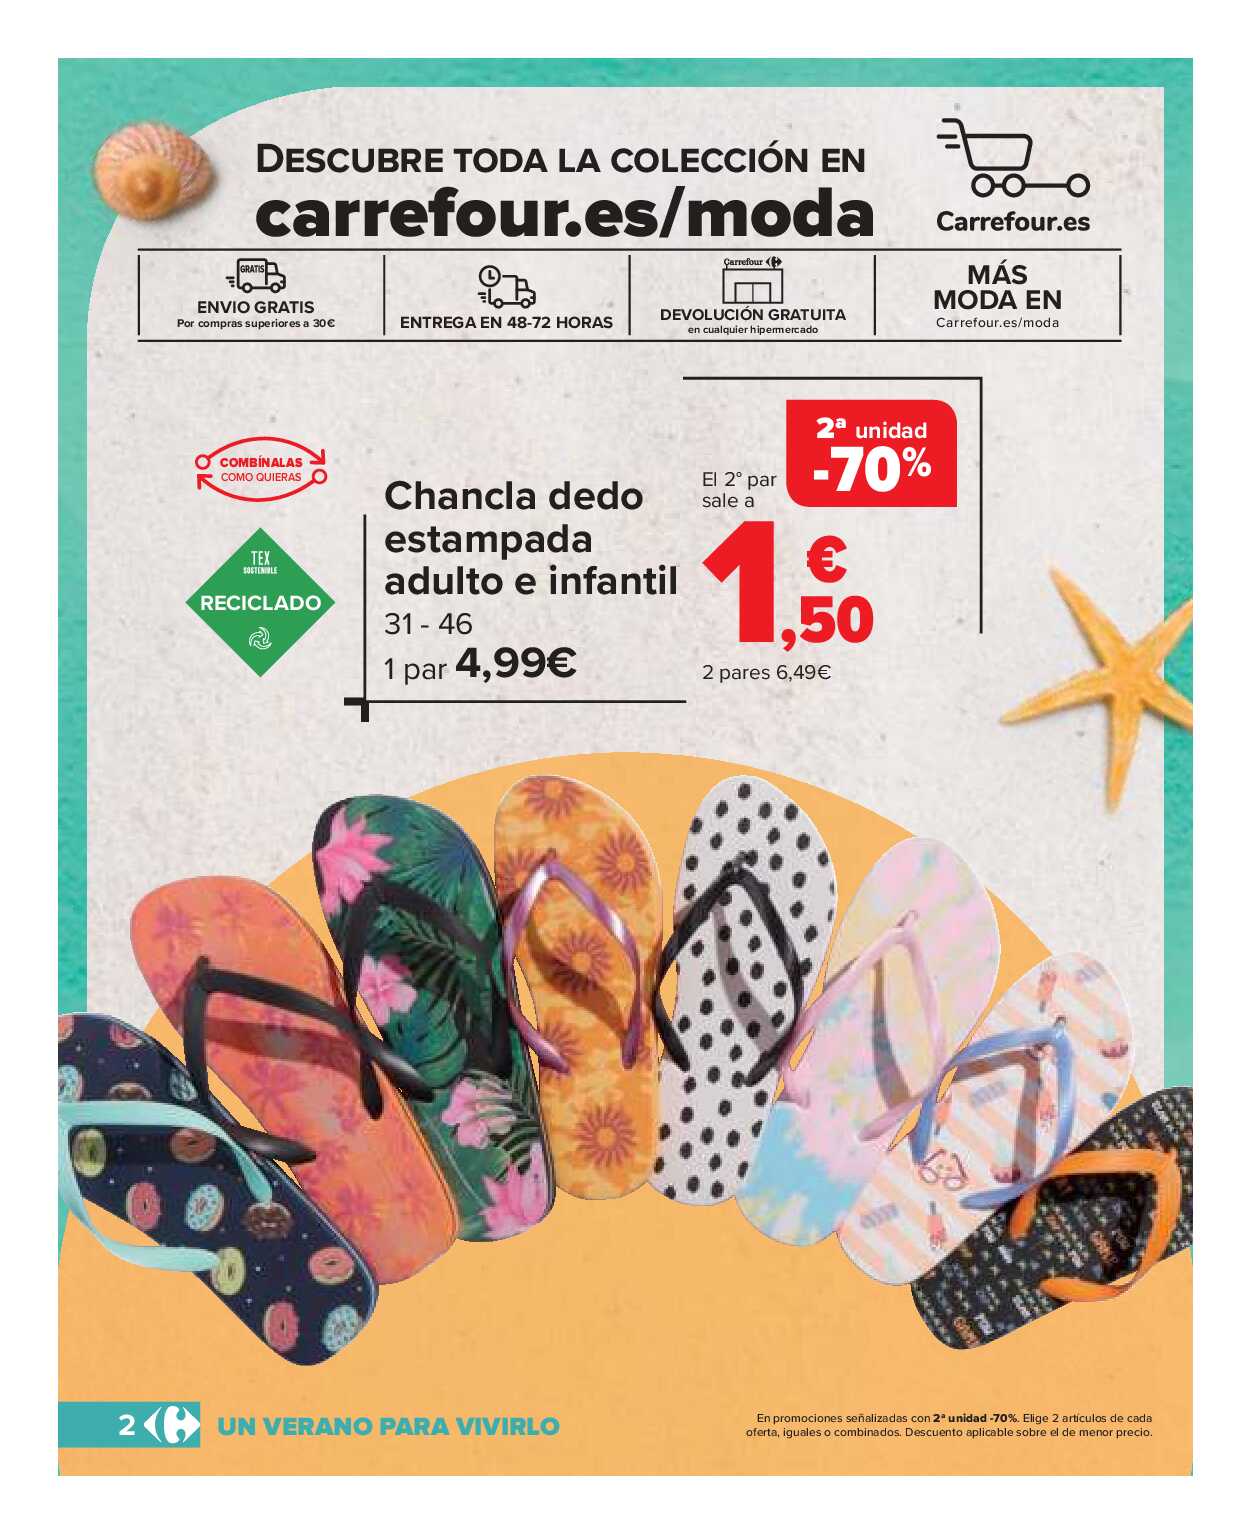 Catálogo de baño: un verano para vivirlo Carrefour. Página 02